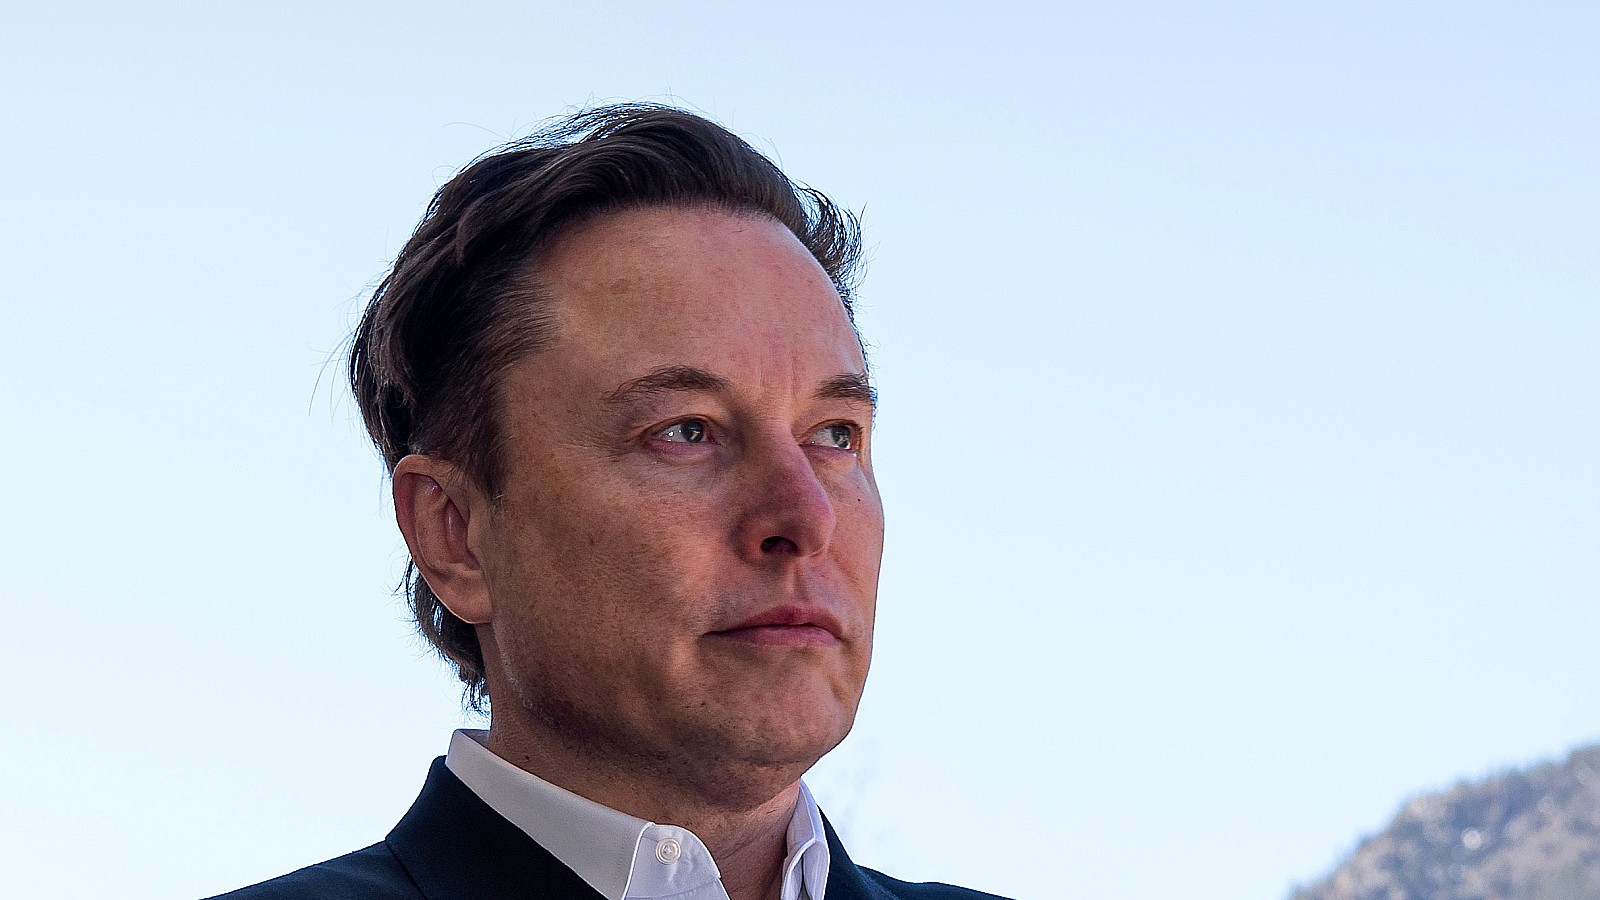 Elon Musk debe renunciar como jefe de Twitter, según su encuesta